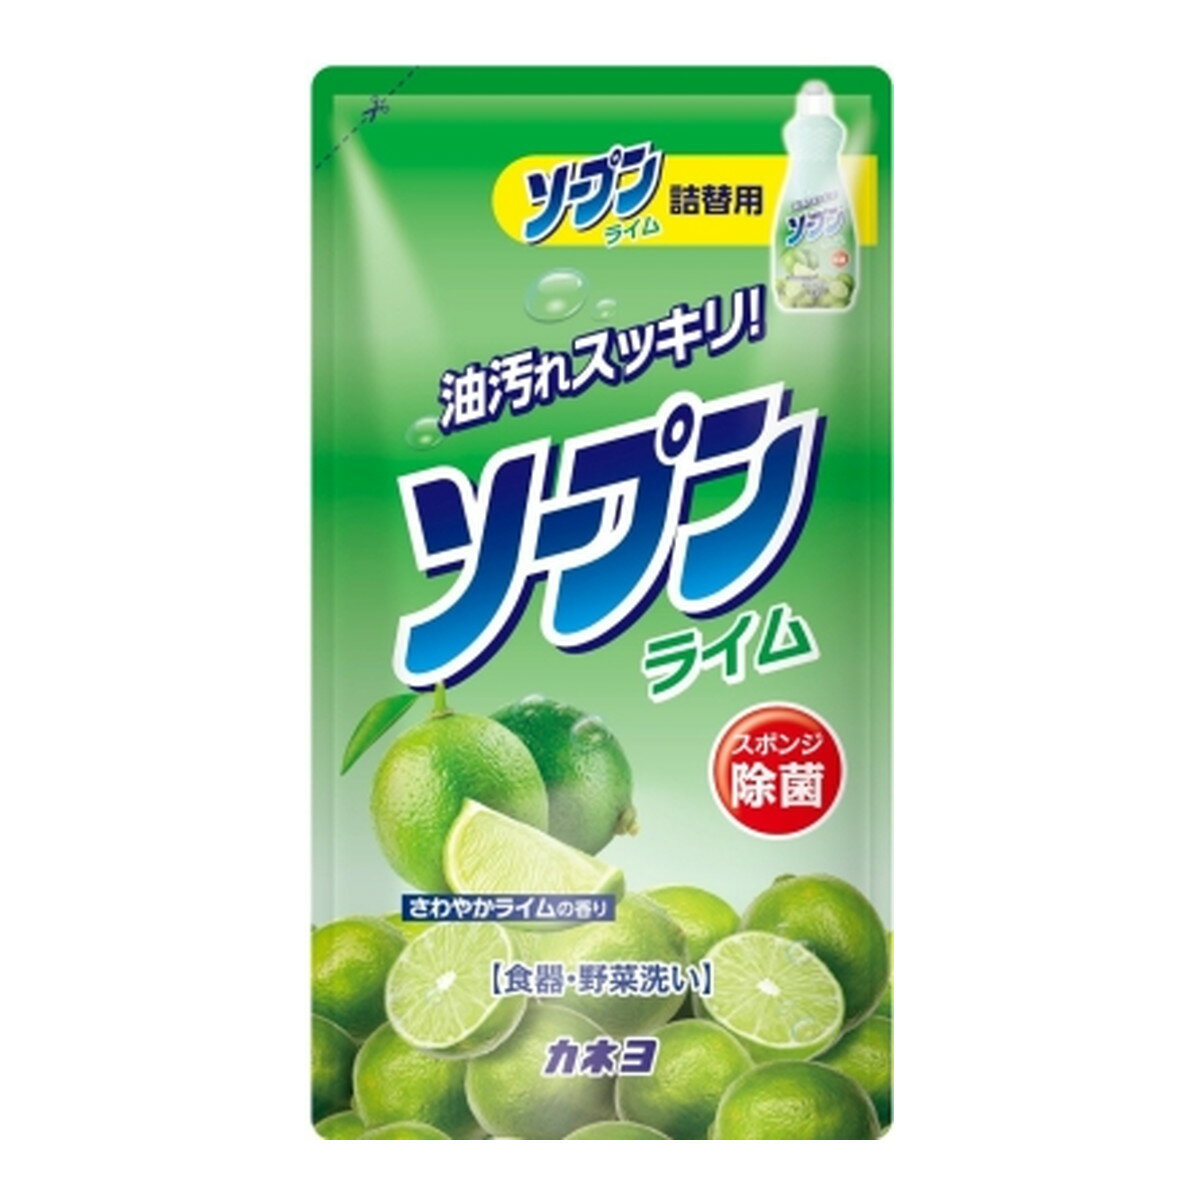 カネヨ石鹸 ソープン ライム 詰替 500ml